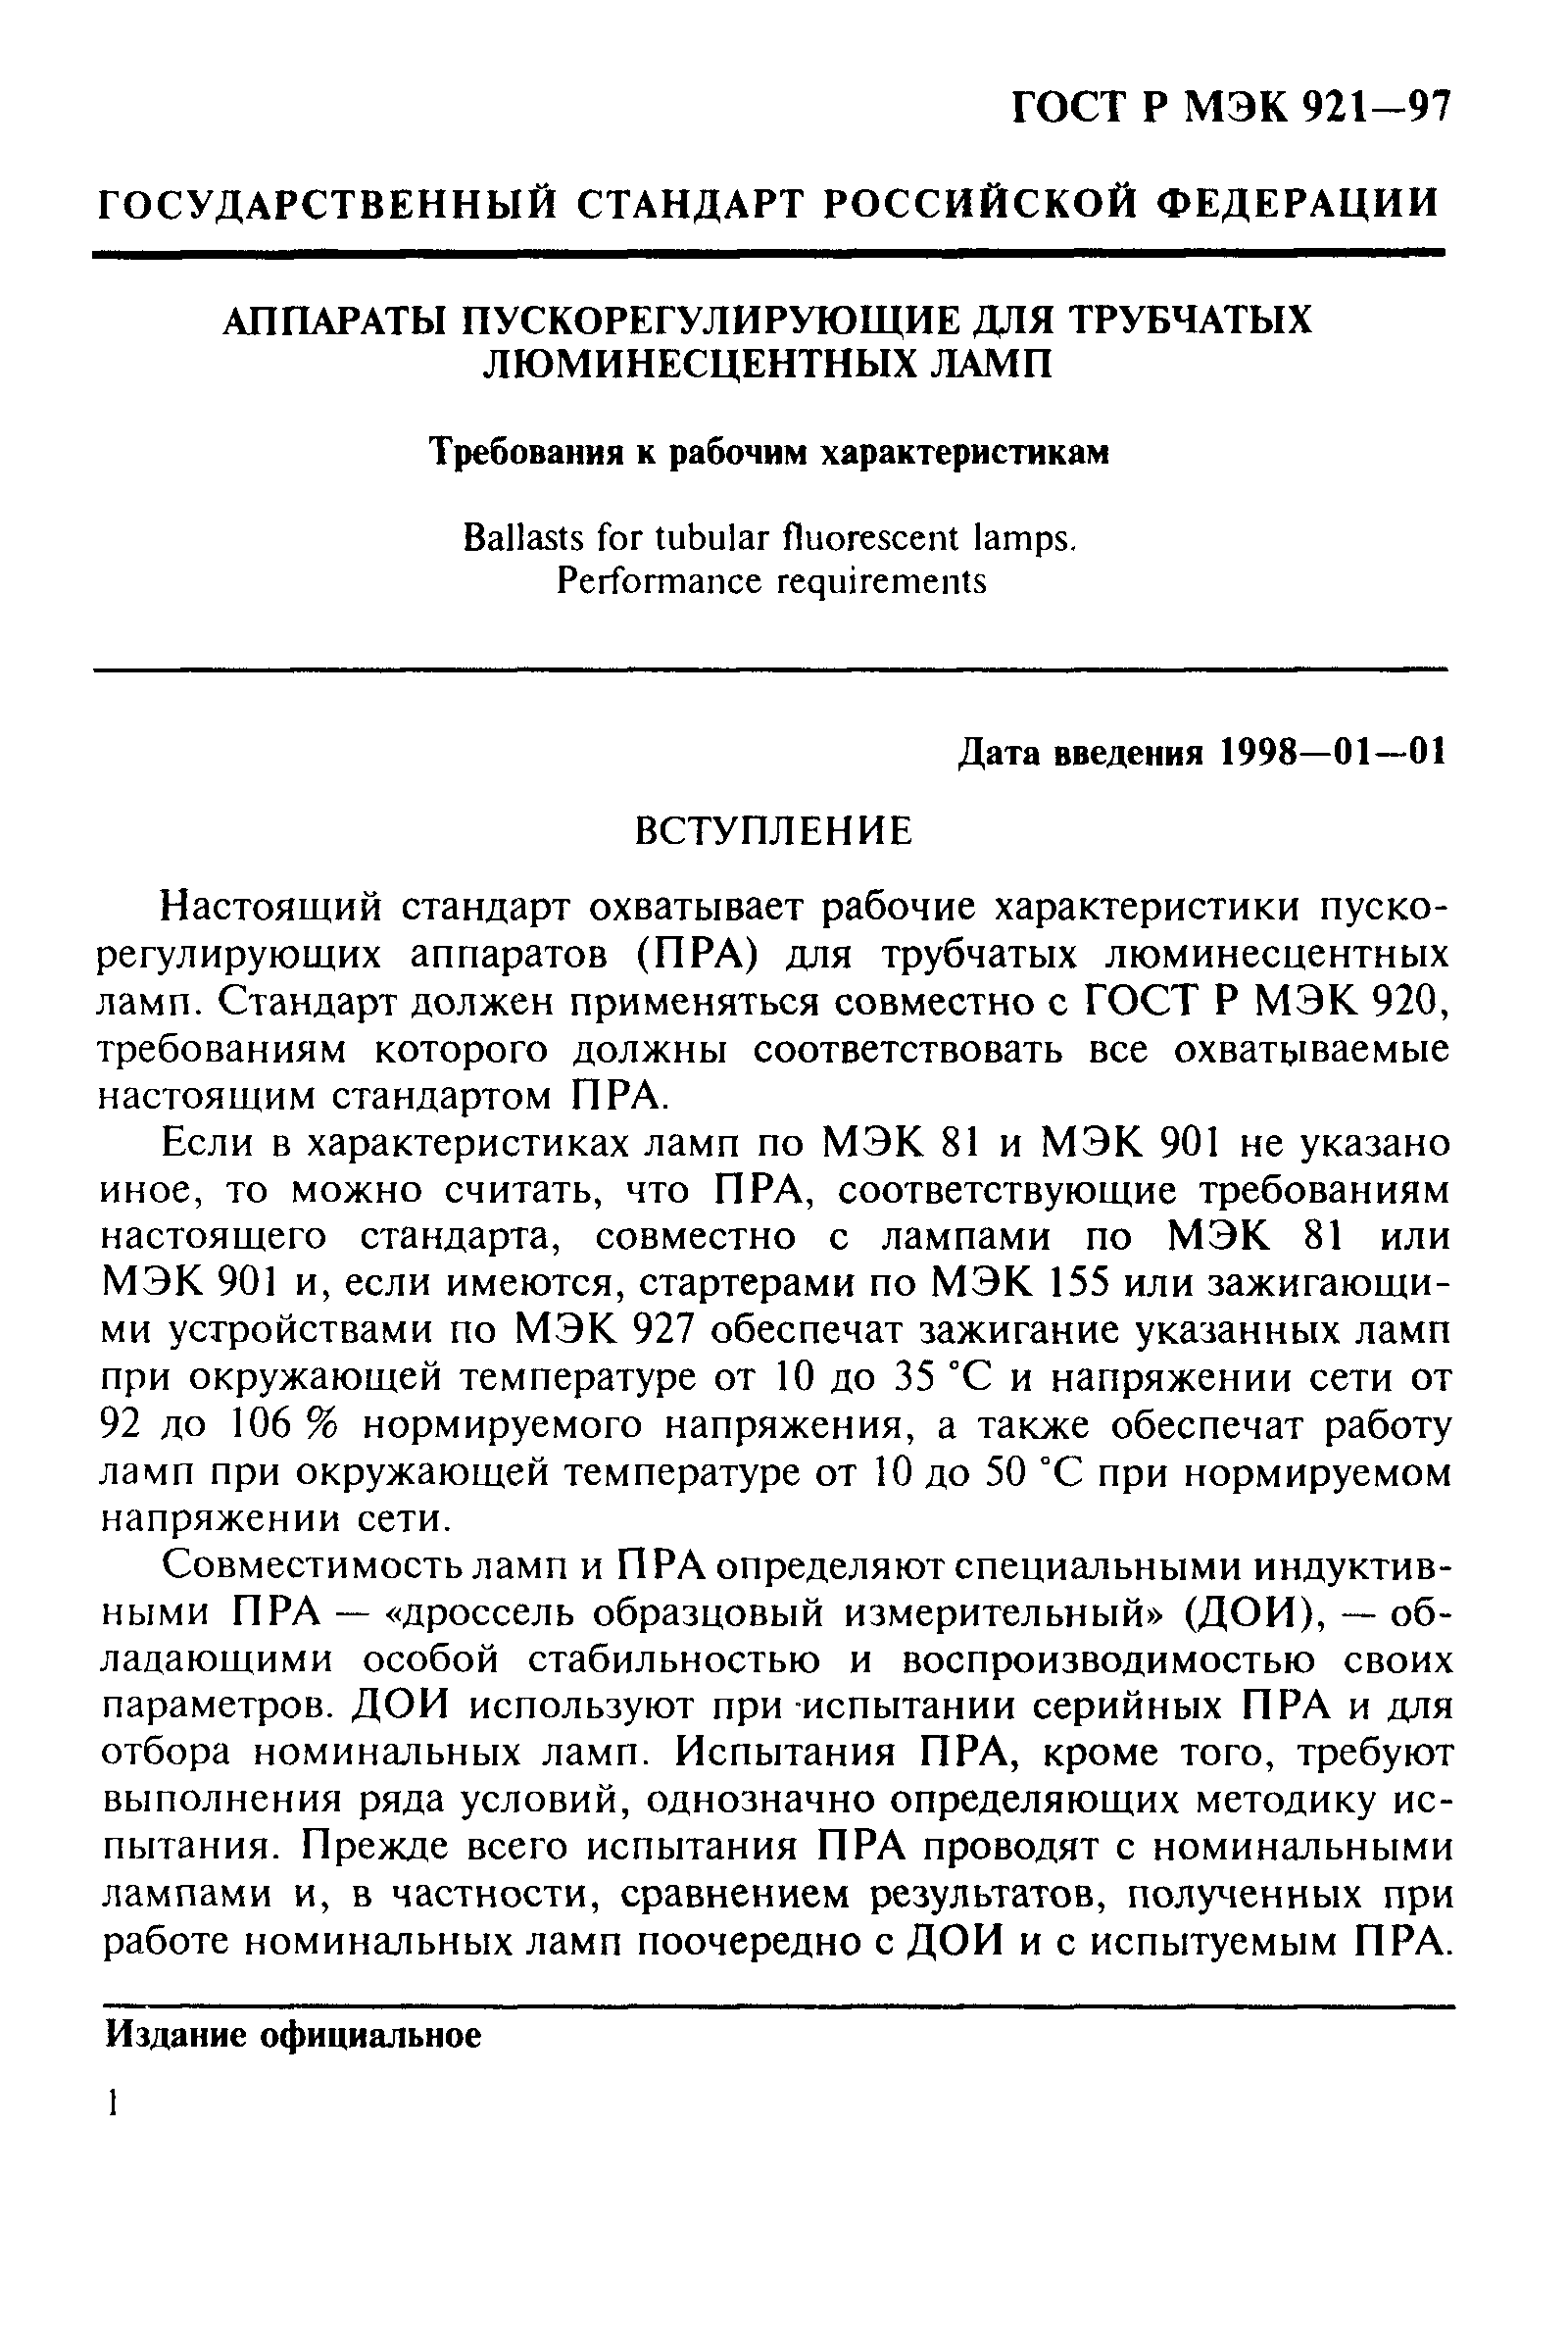 ГОСТ Р МЭК 921-97